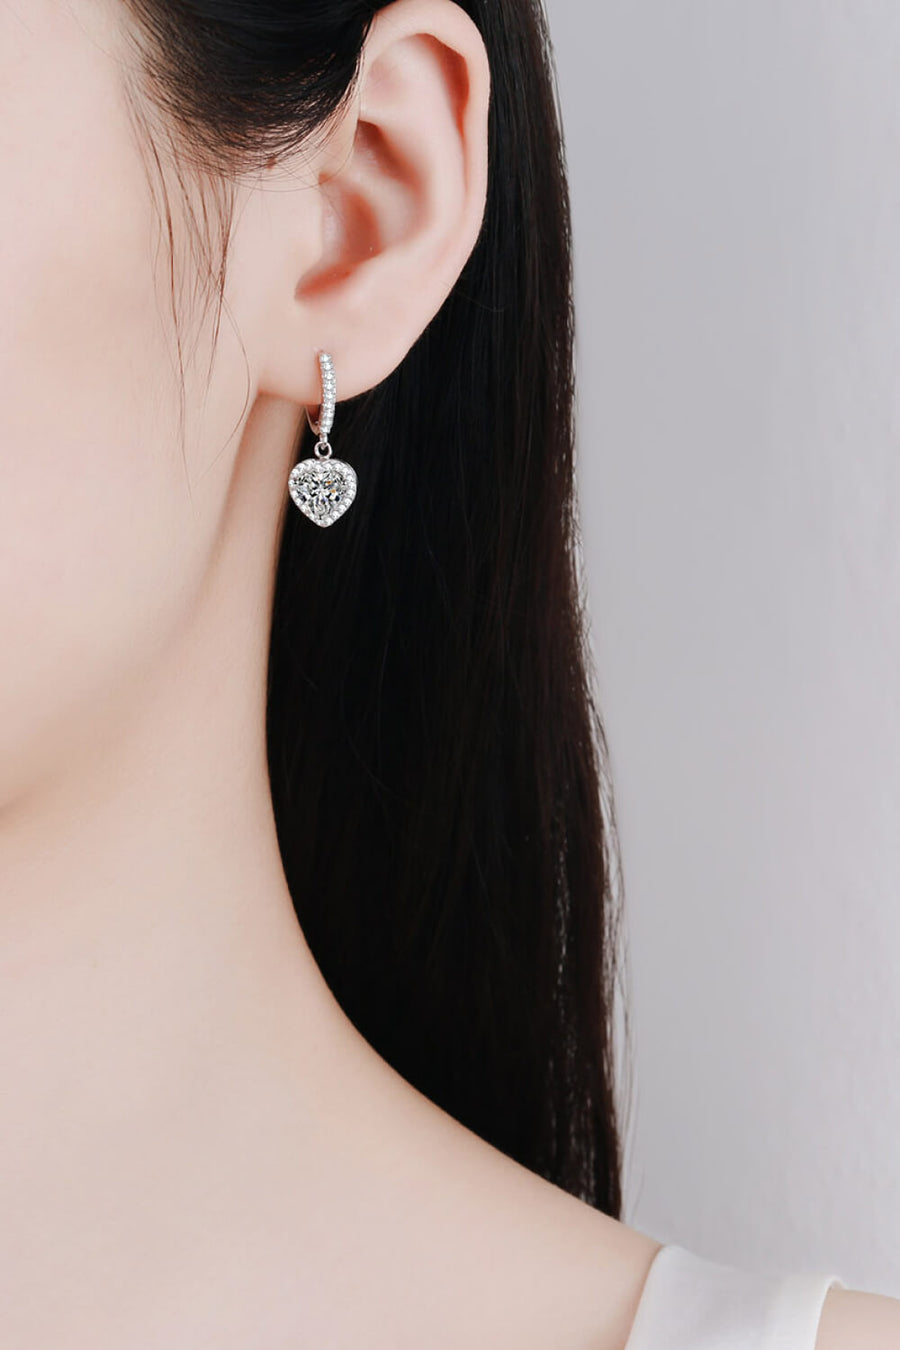 Best Diamond Earrings Jewelry Gifts for Women | 2 Carat Heart Diamond Drop Earrings | MASON New York